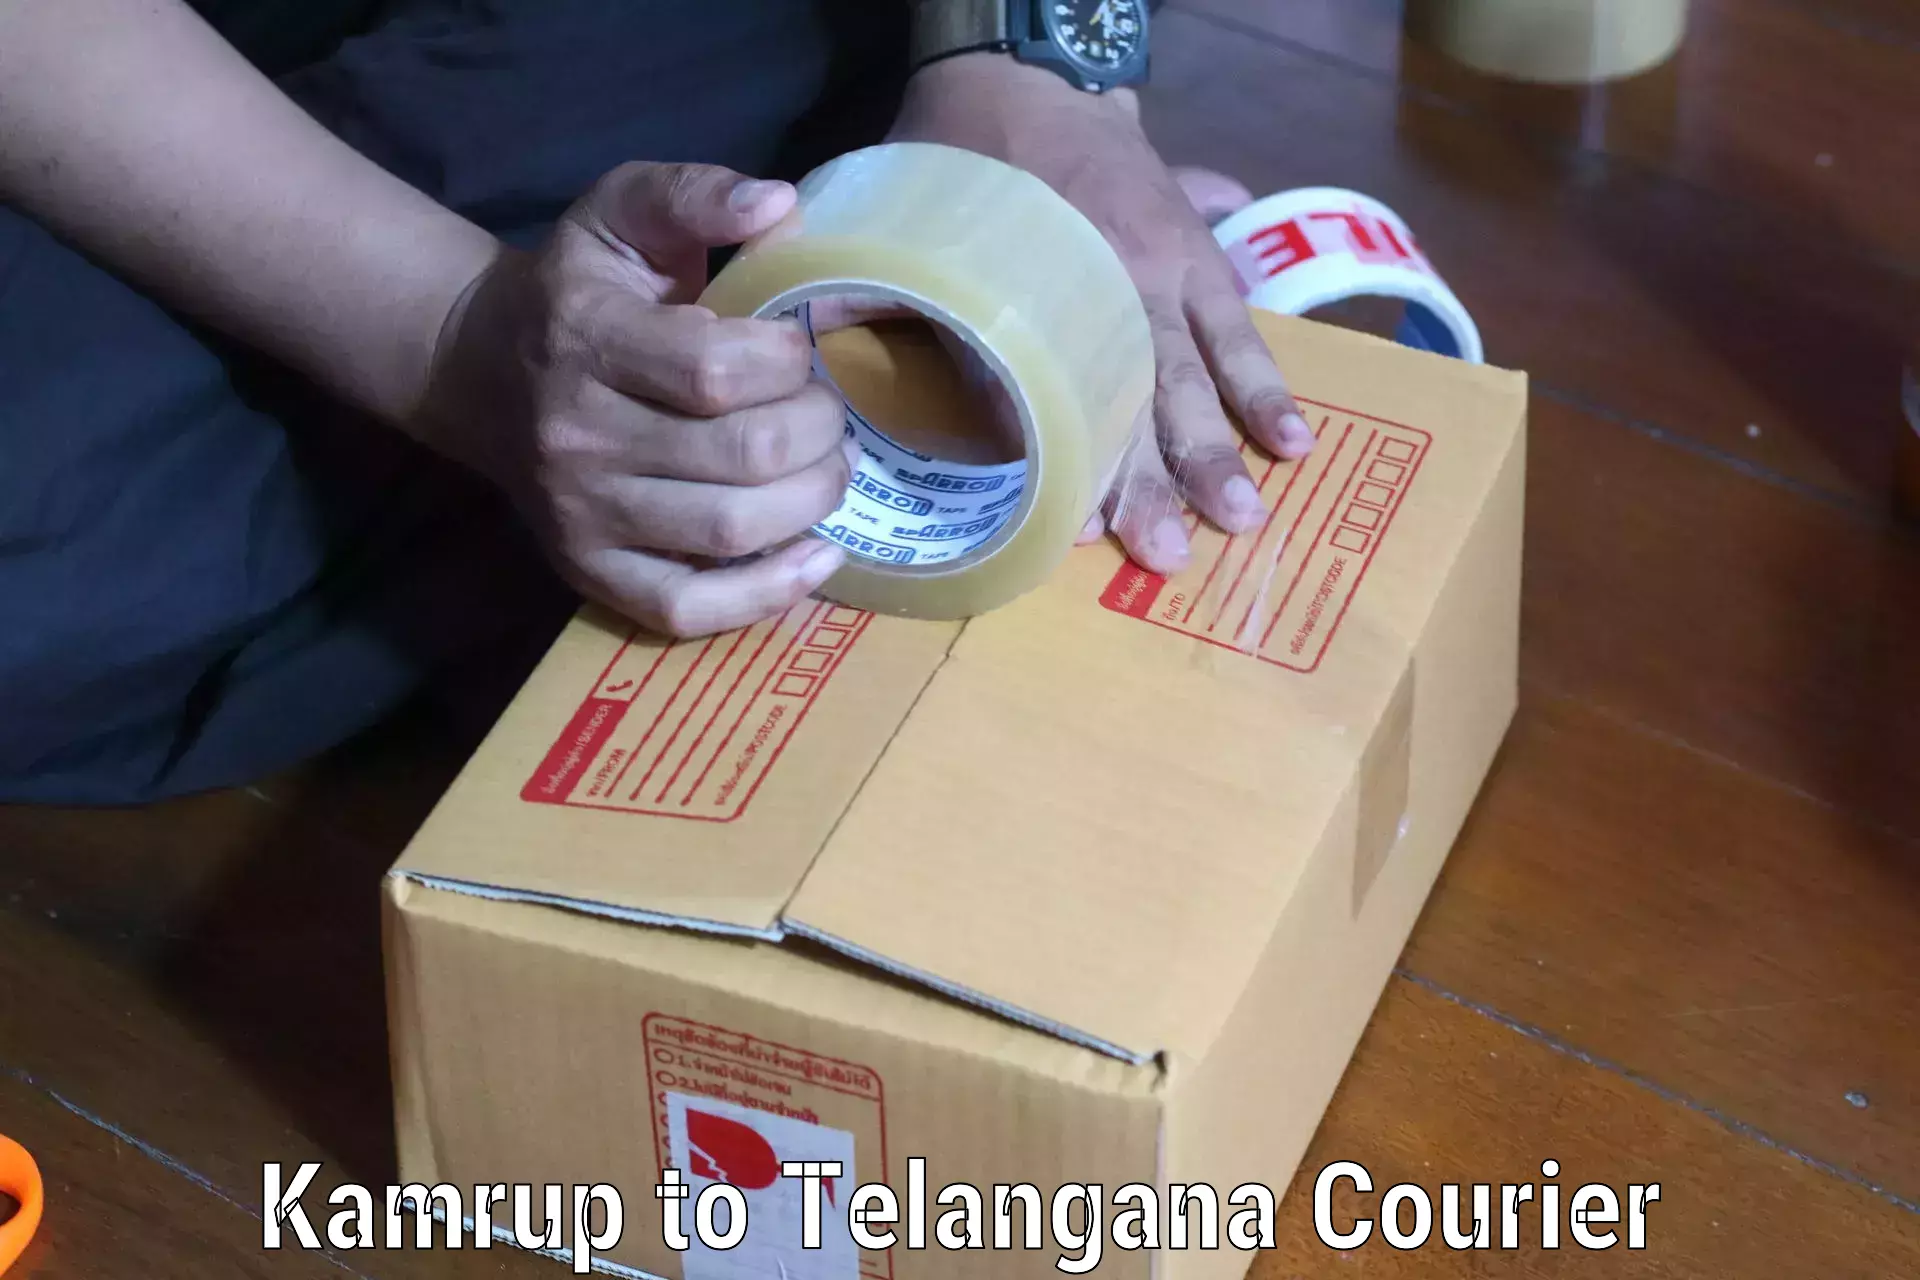 High-capacity parcel service Kamrup to Telangana